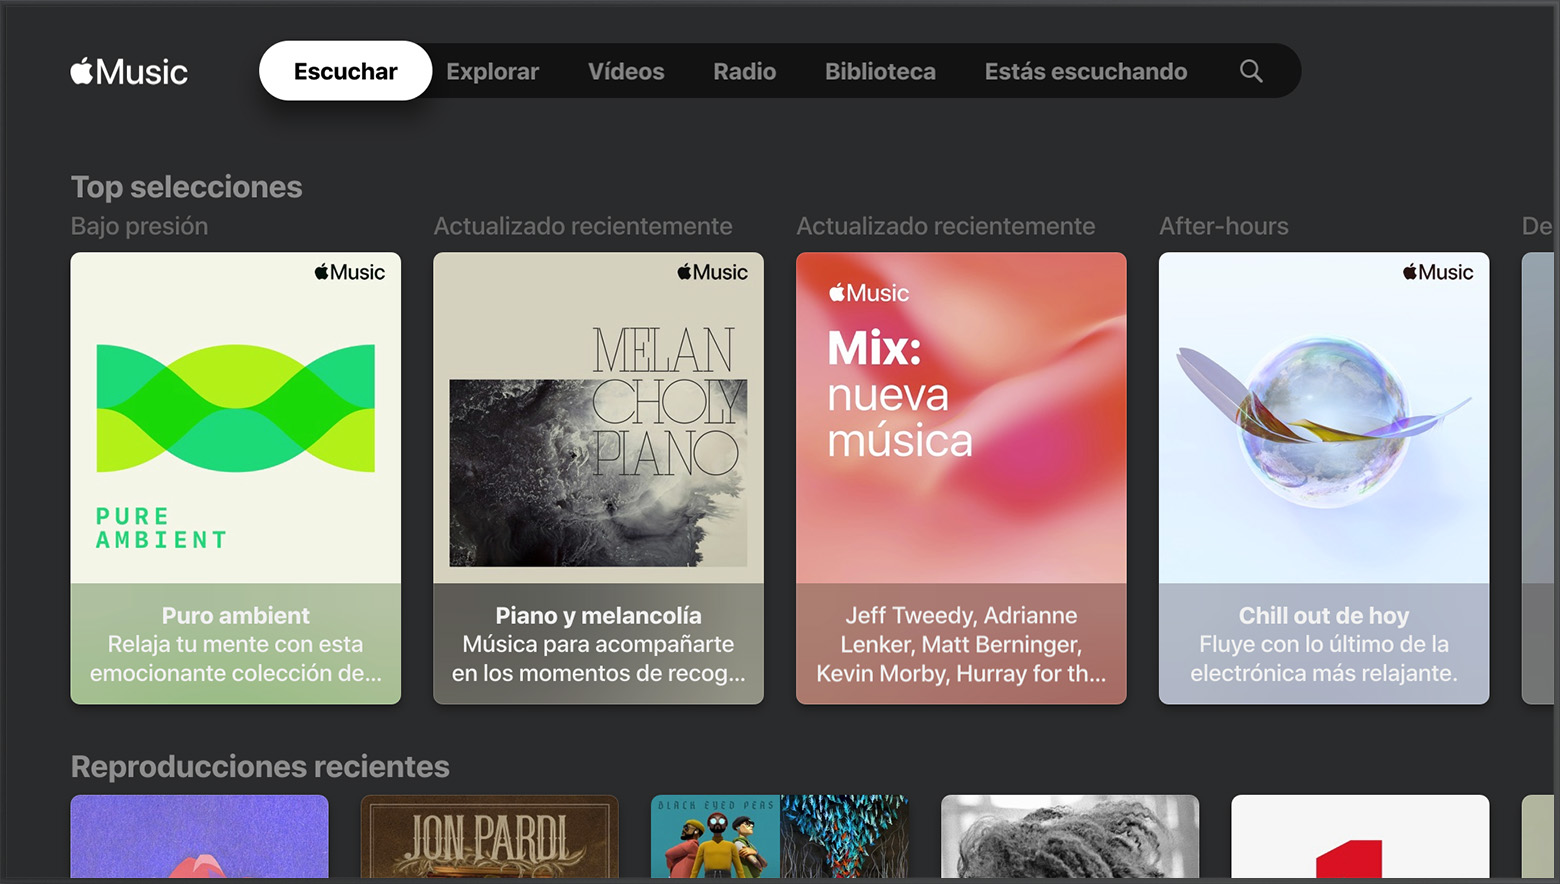 Televisor inteligente en el que se muestra la sección “Explorar” de la app Música (Apple Music)